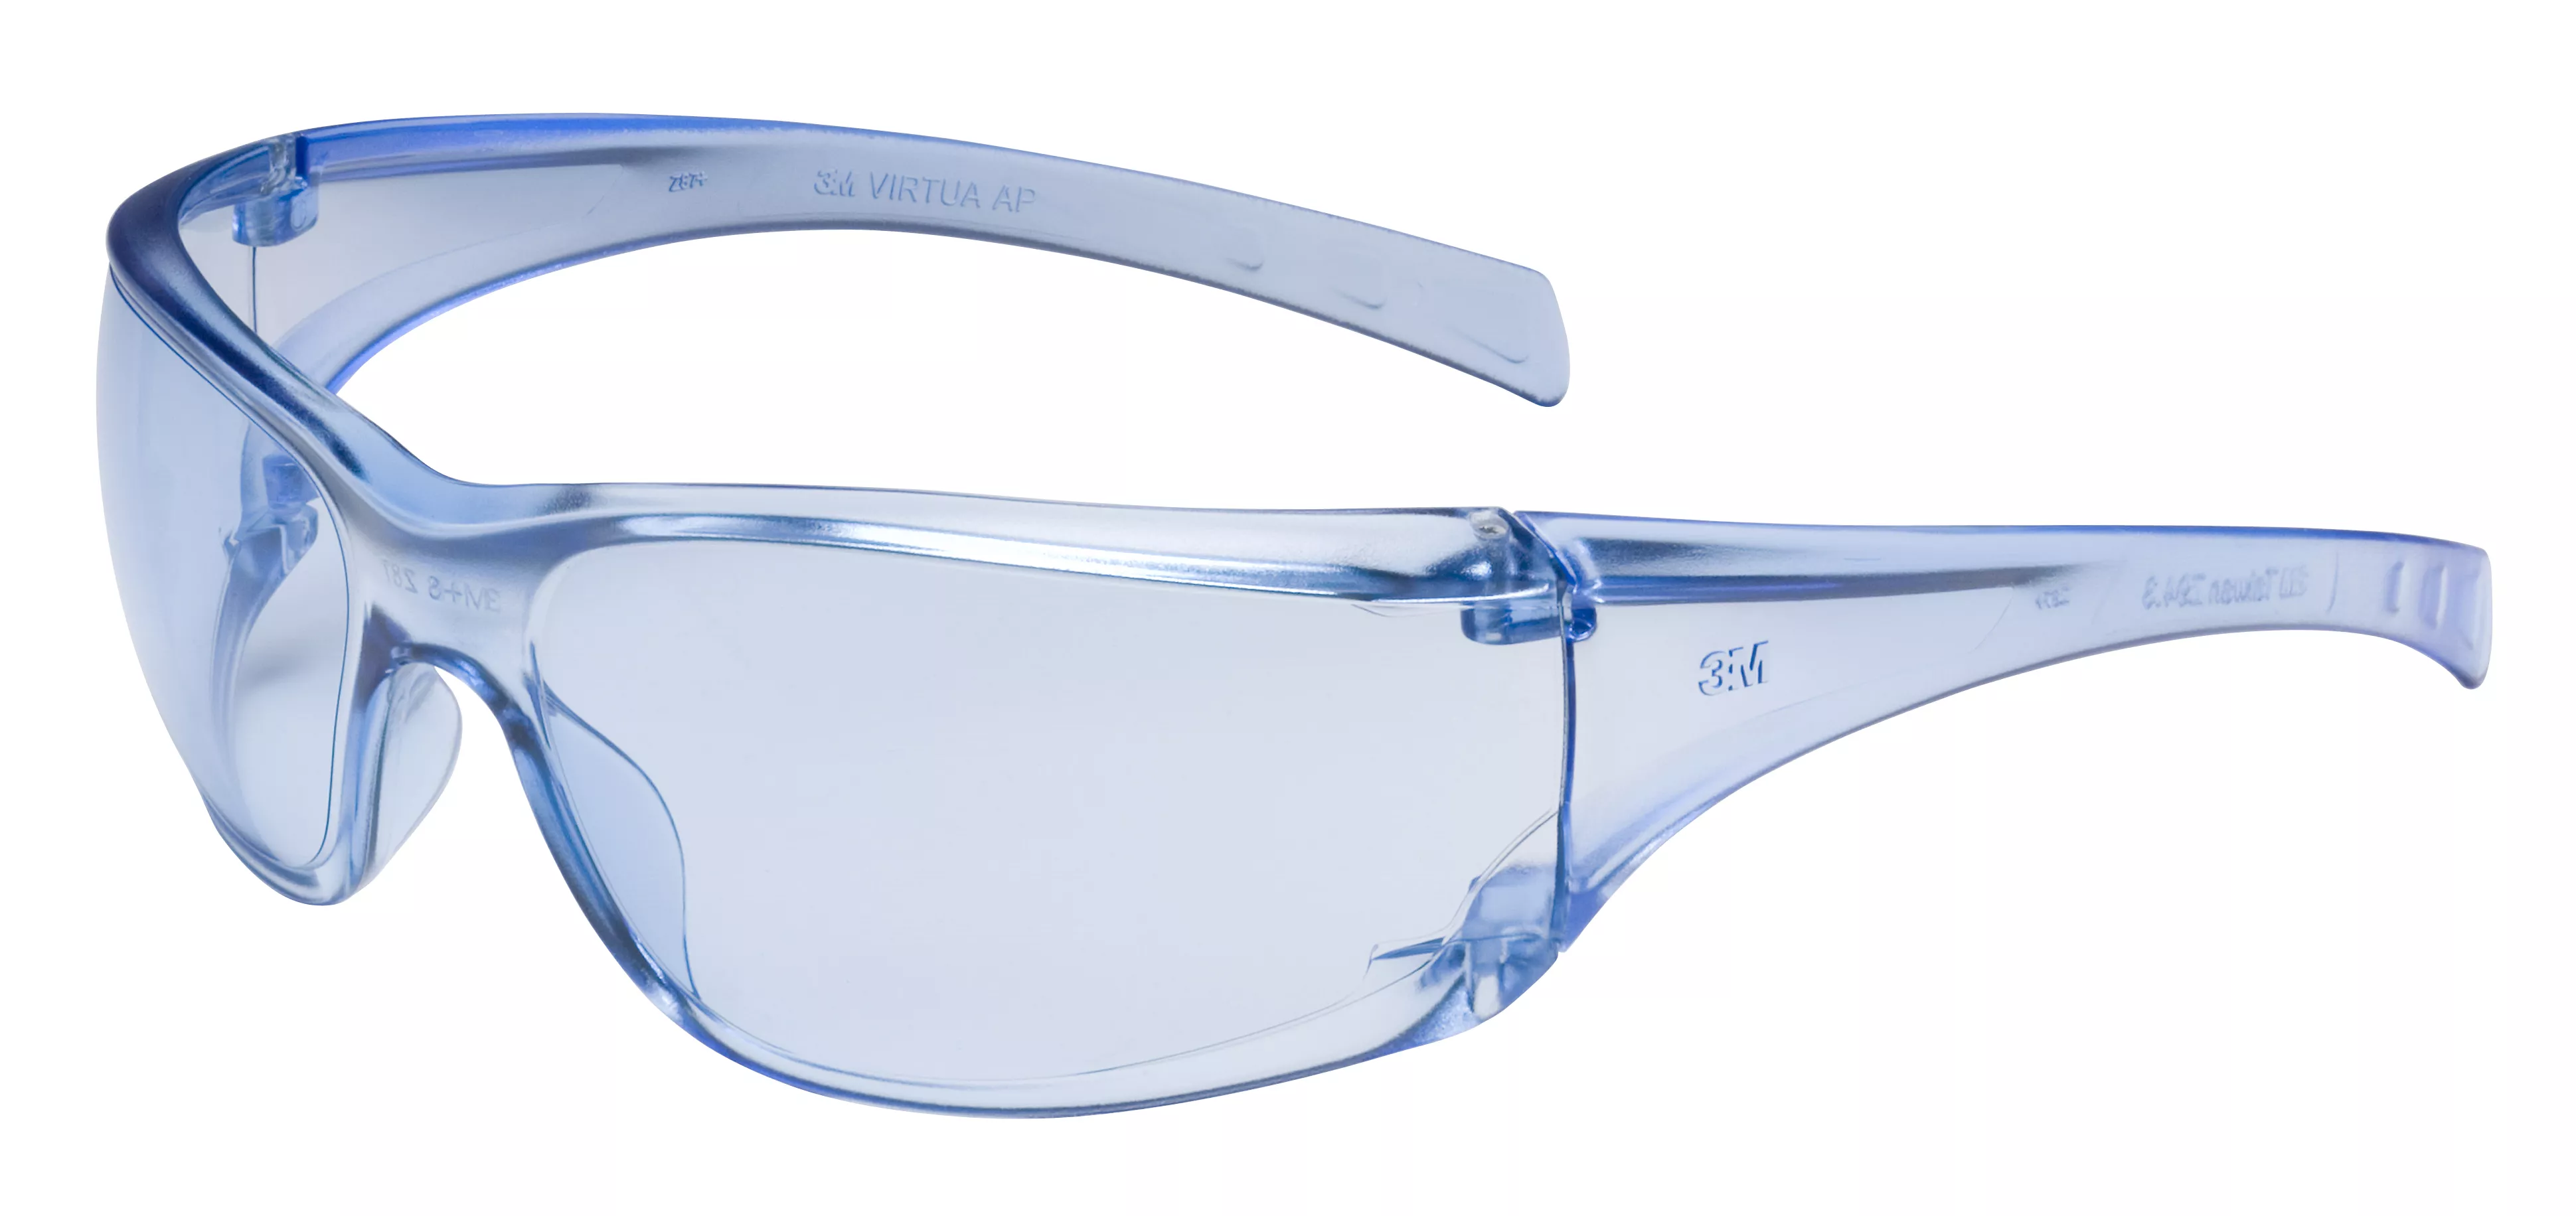 3M™ Virtua™ AP Protective Eyewear 11816-00000-20 Light Blue Hard Coat
Lens, 20 EA/Case